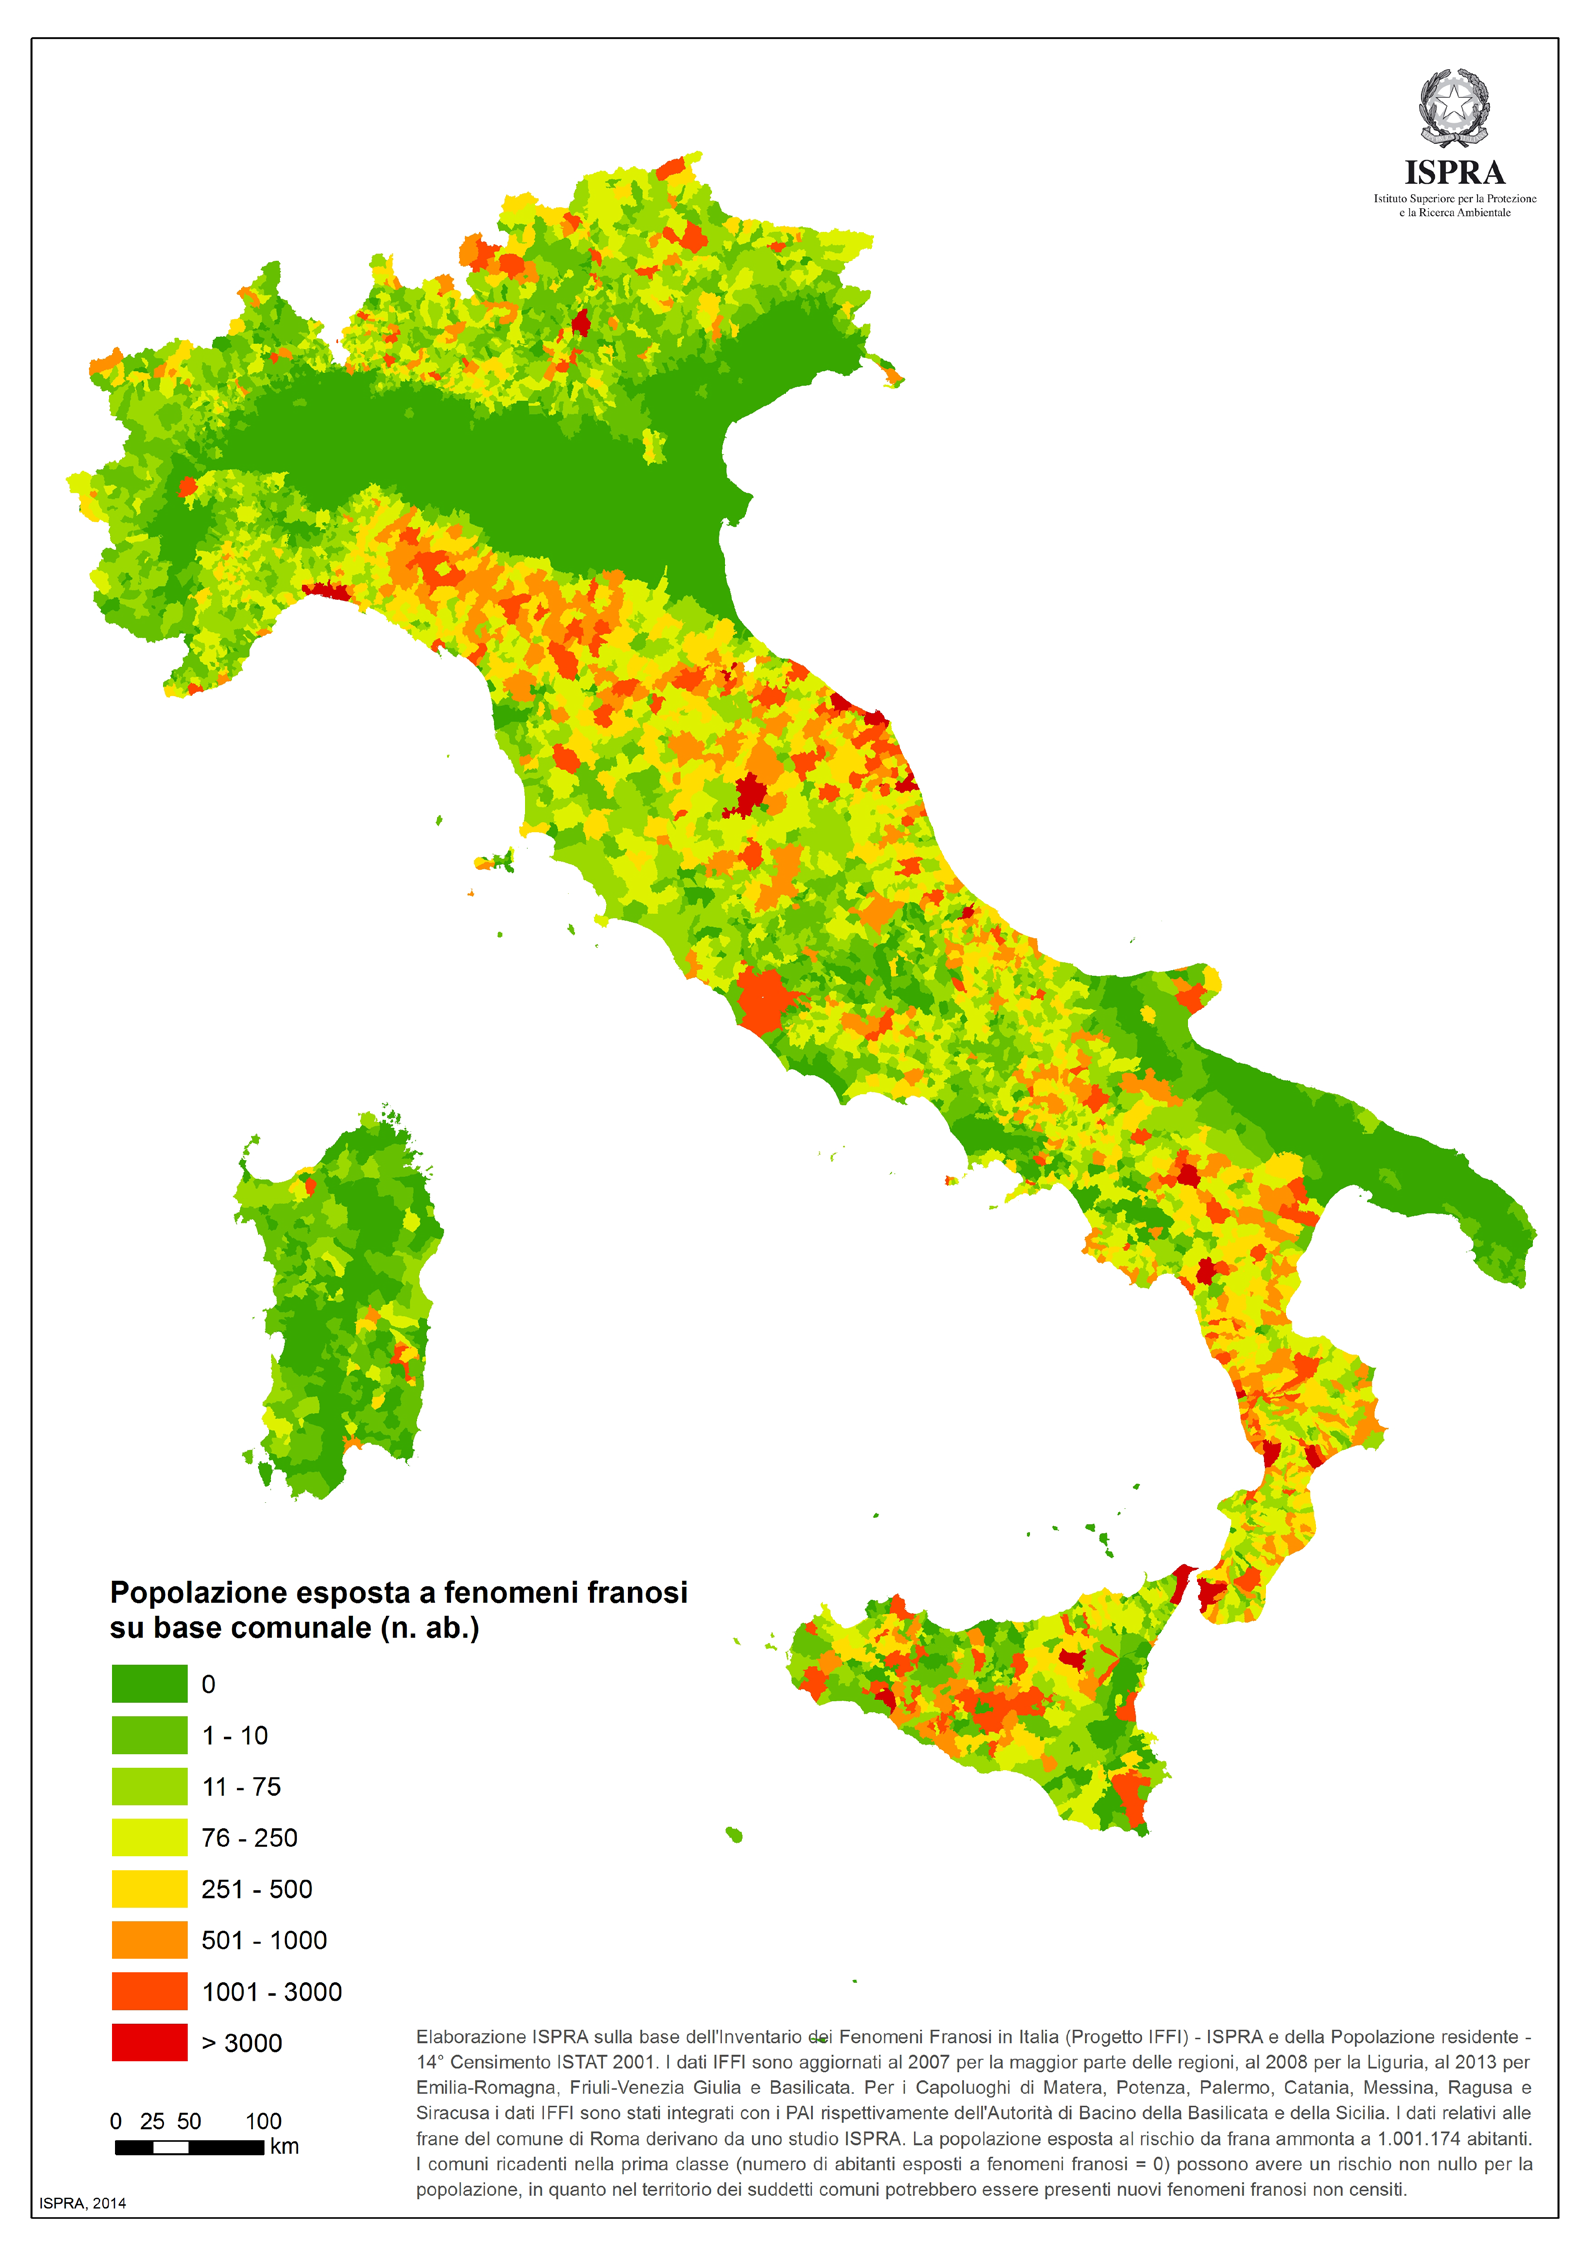 Rapporto di sintesi sul dissesto idrogeologico in Italia ISPRA 1.3 Popolazione esposta a frane La popolazione esposta a fenomeni franosi in Italia ammonta a 1.001.174 abitanti.